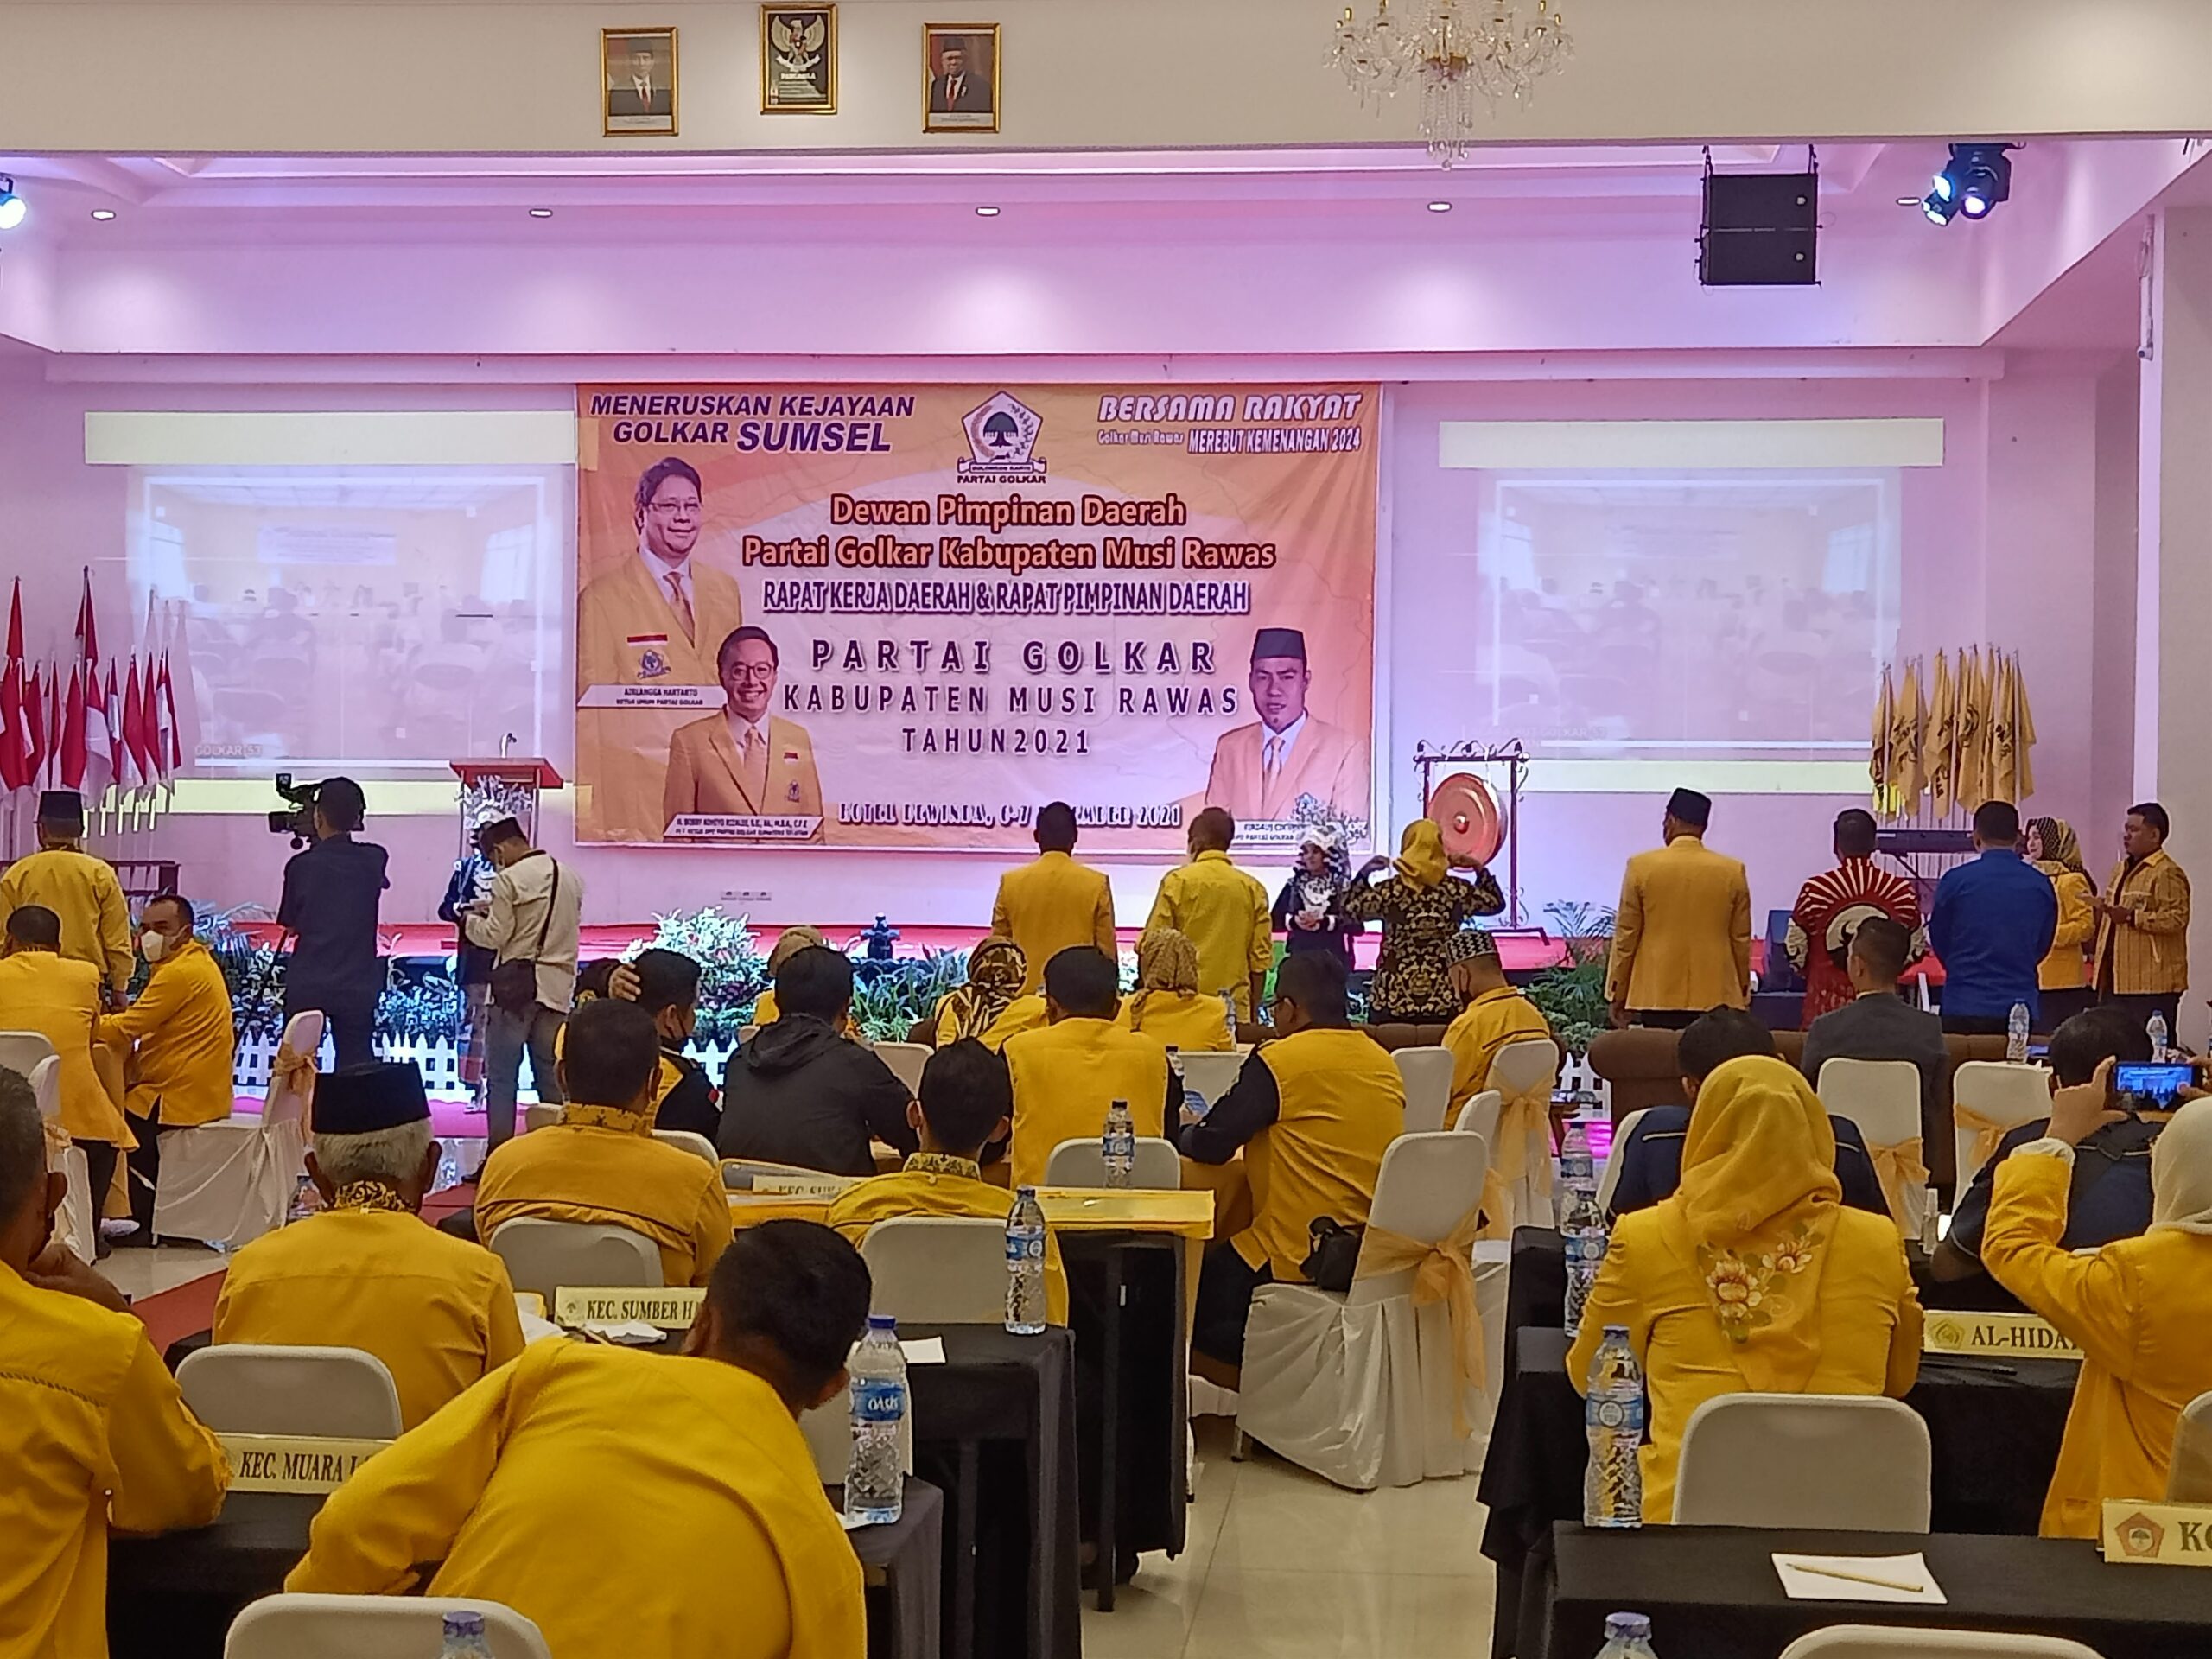 Gooong, Rakerda dan Rapimda 2021 Dimulai, Golkar Siap Menangkan Pemilu 2024